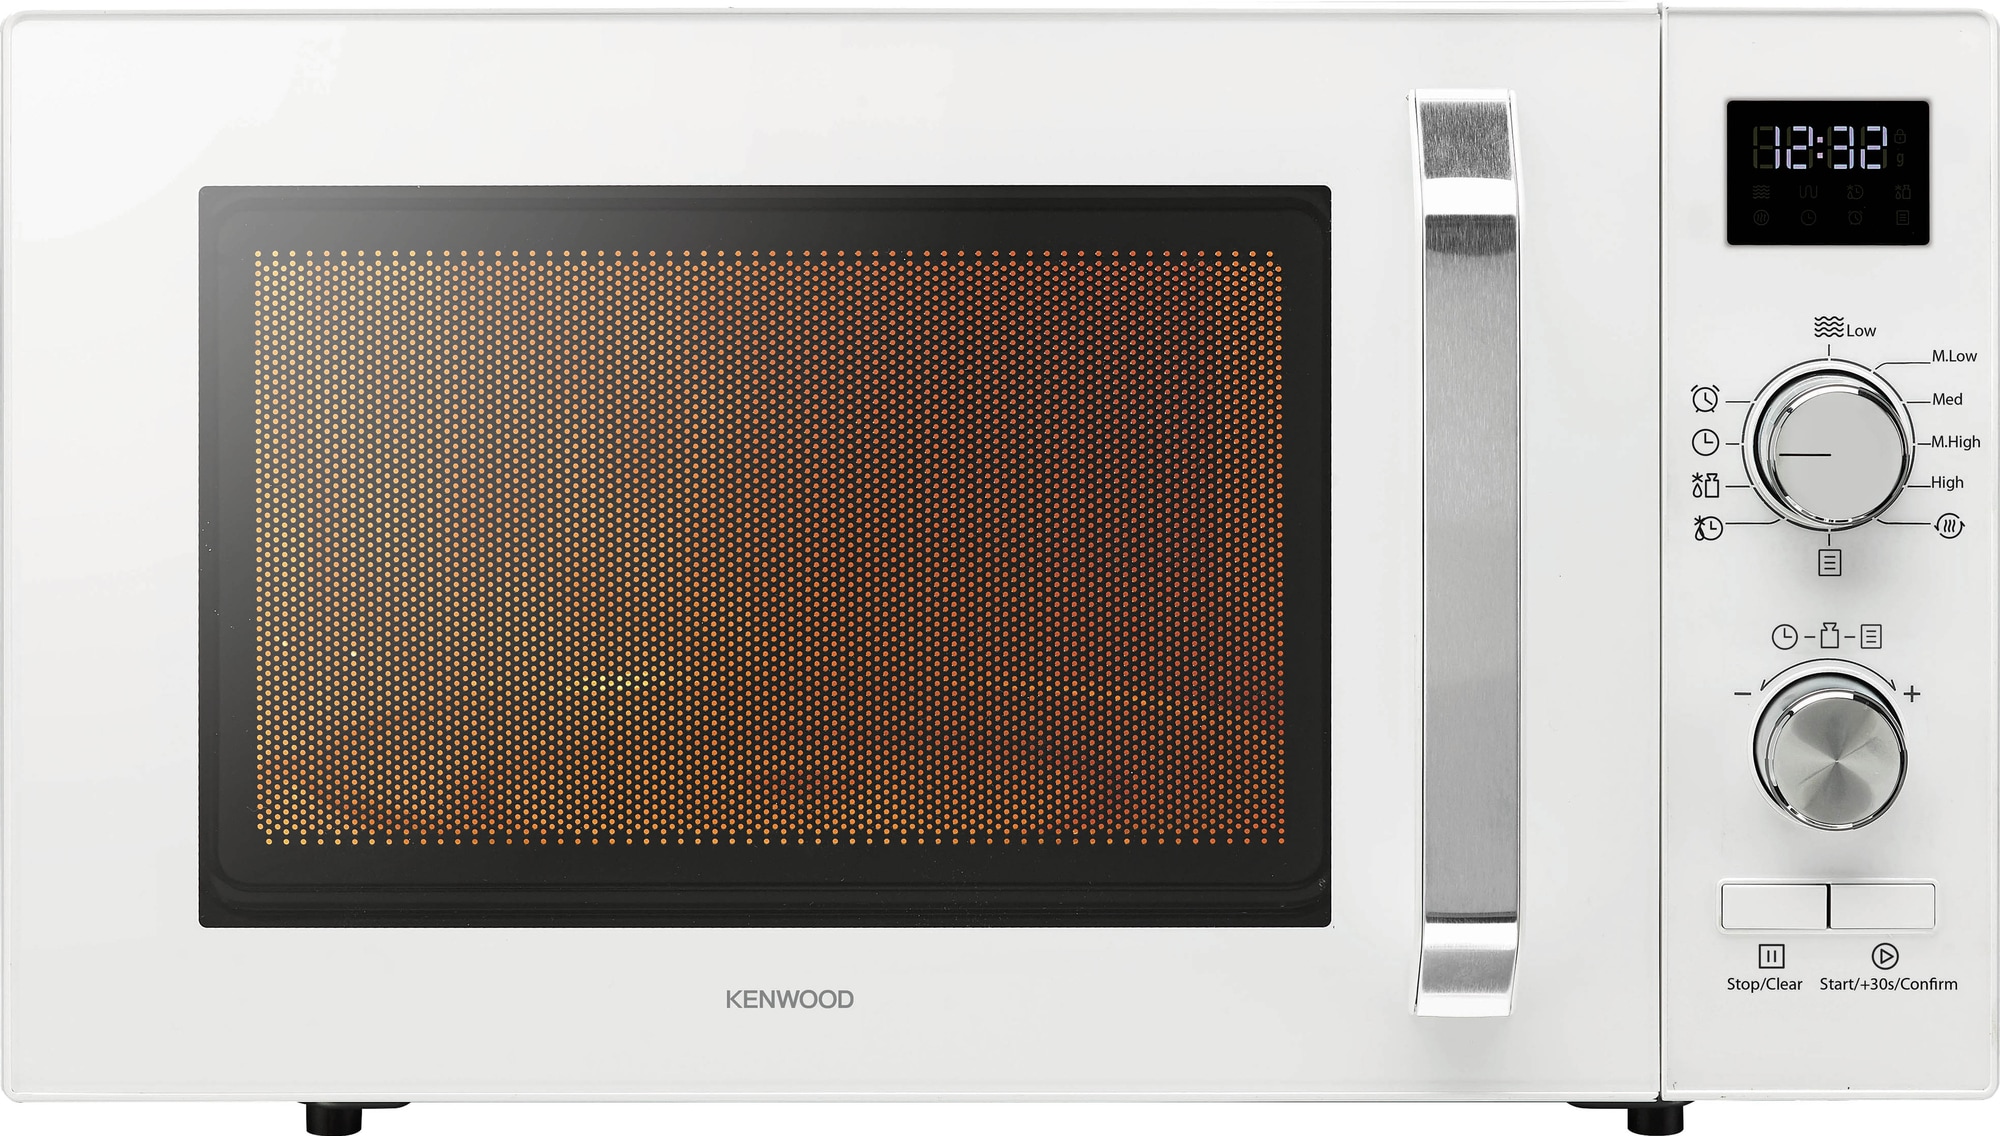 Kenwood mikroovn K23MSW21E (hvid) | Elgiganten